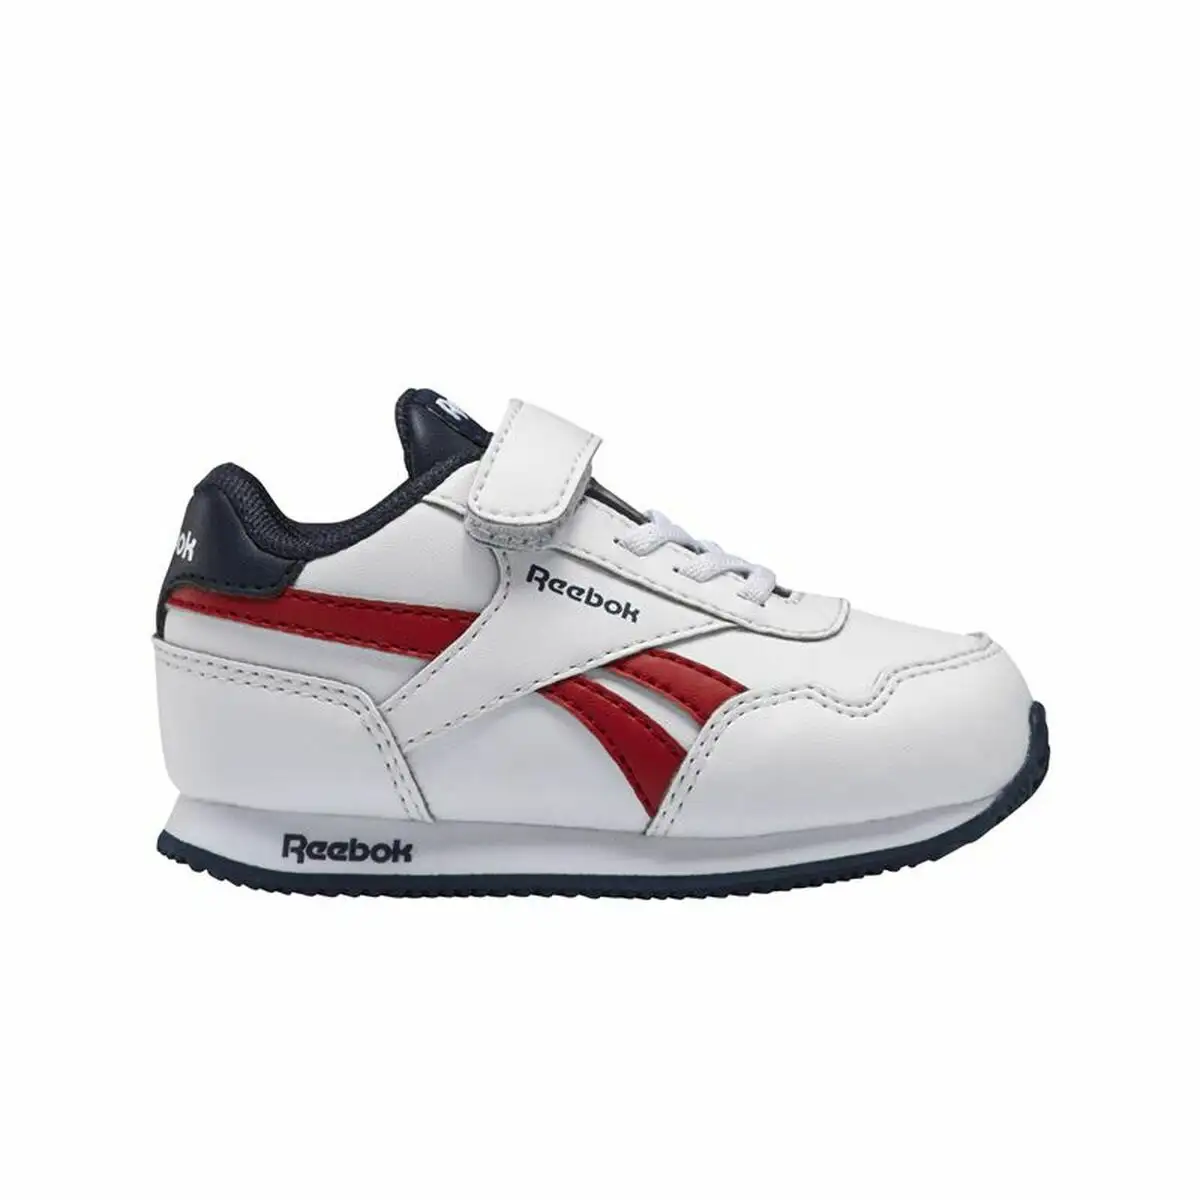 Chaussures de sport pour bebes reebok royal classic jogger 3 0 blanc_9337. DIAYTAR SENEGAL - Où Chaque Produit est une Histoire à Raconter. Découvrez notre sélection de produits qui vous permettent de créer votre propre récit à travers vos achats.